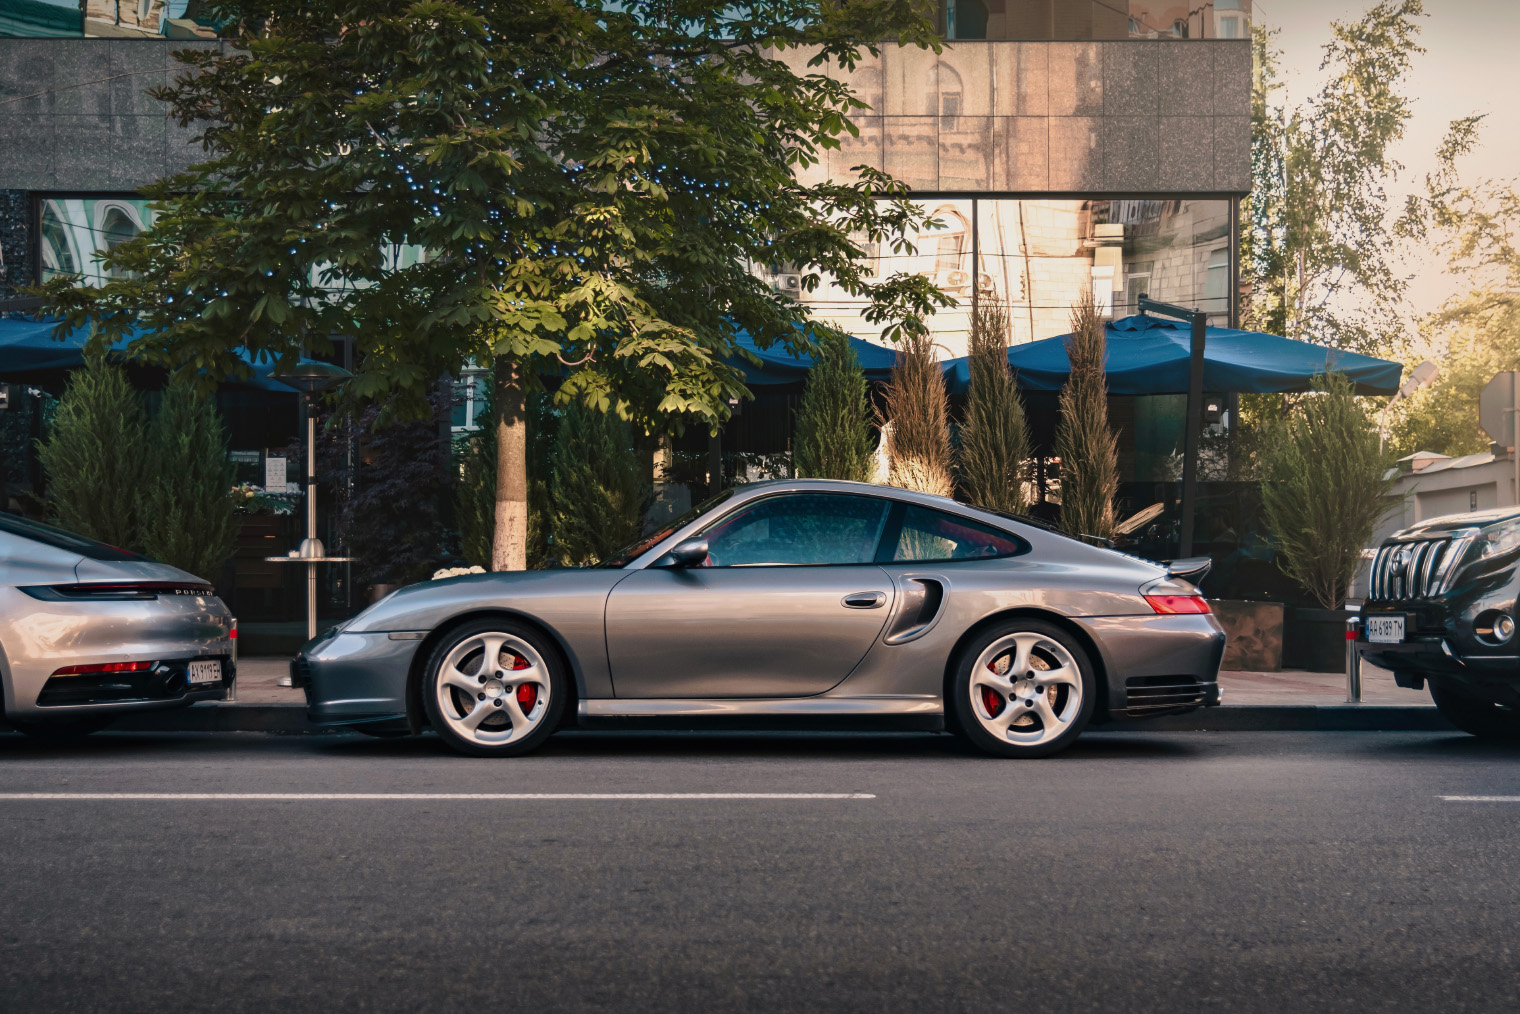 Классический пример купе — Porsche 911. Несмотря на заднемоторную компоновку и багажник в передней части автомобиля, это двухдверный трехобъемный кузов. Источник: Andrew Zaikovskyi / Shutterstock